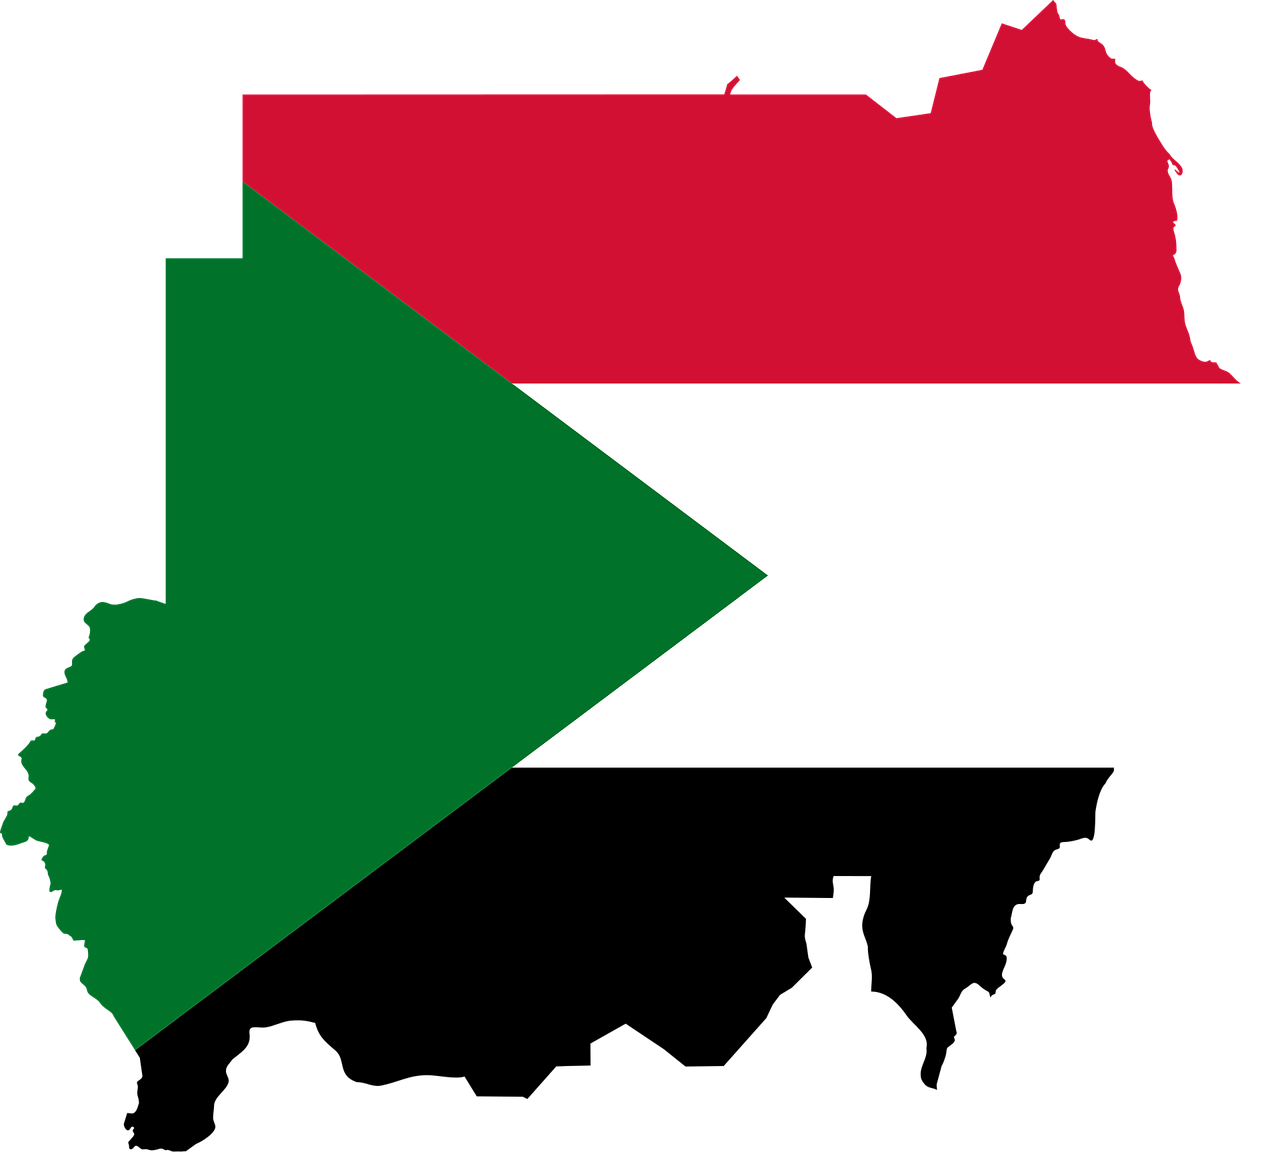 La diáspora de Sudán se une a la resistencia democrática interna